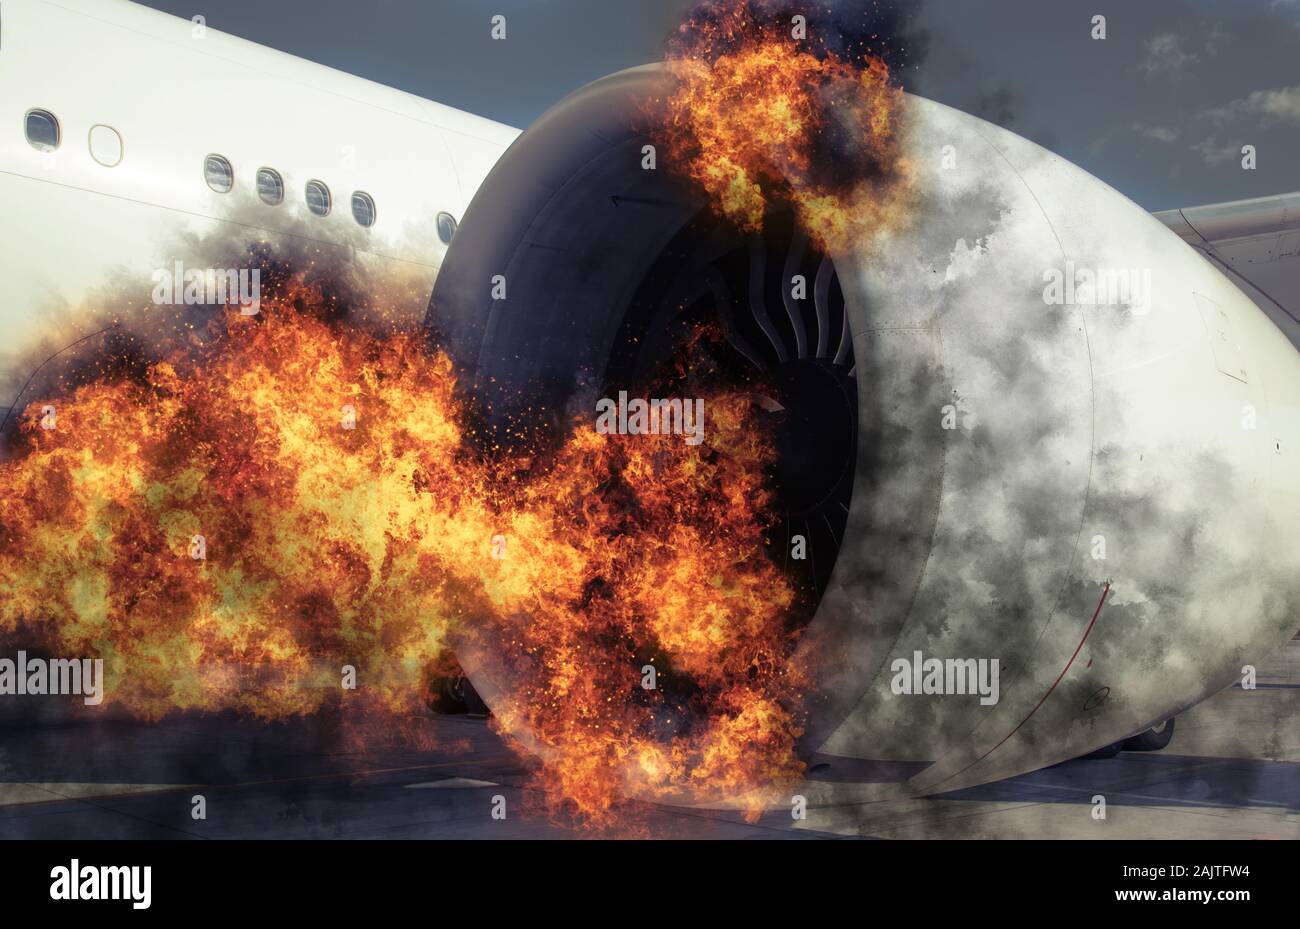 Geerdete Fläche, die in den Flughafen zu einem katastrophalen Ereignis durch die Verbrennung von Motor, Feuer und Rauch Stockfoto